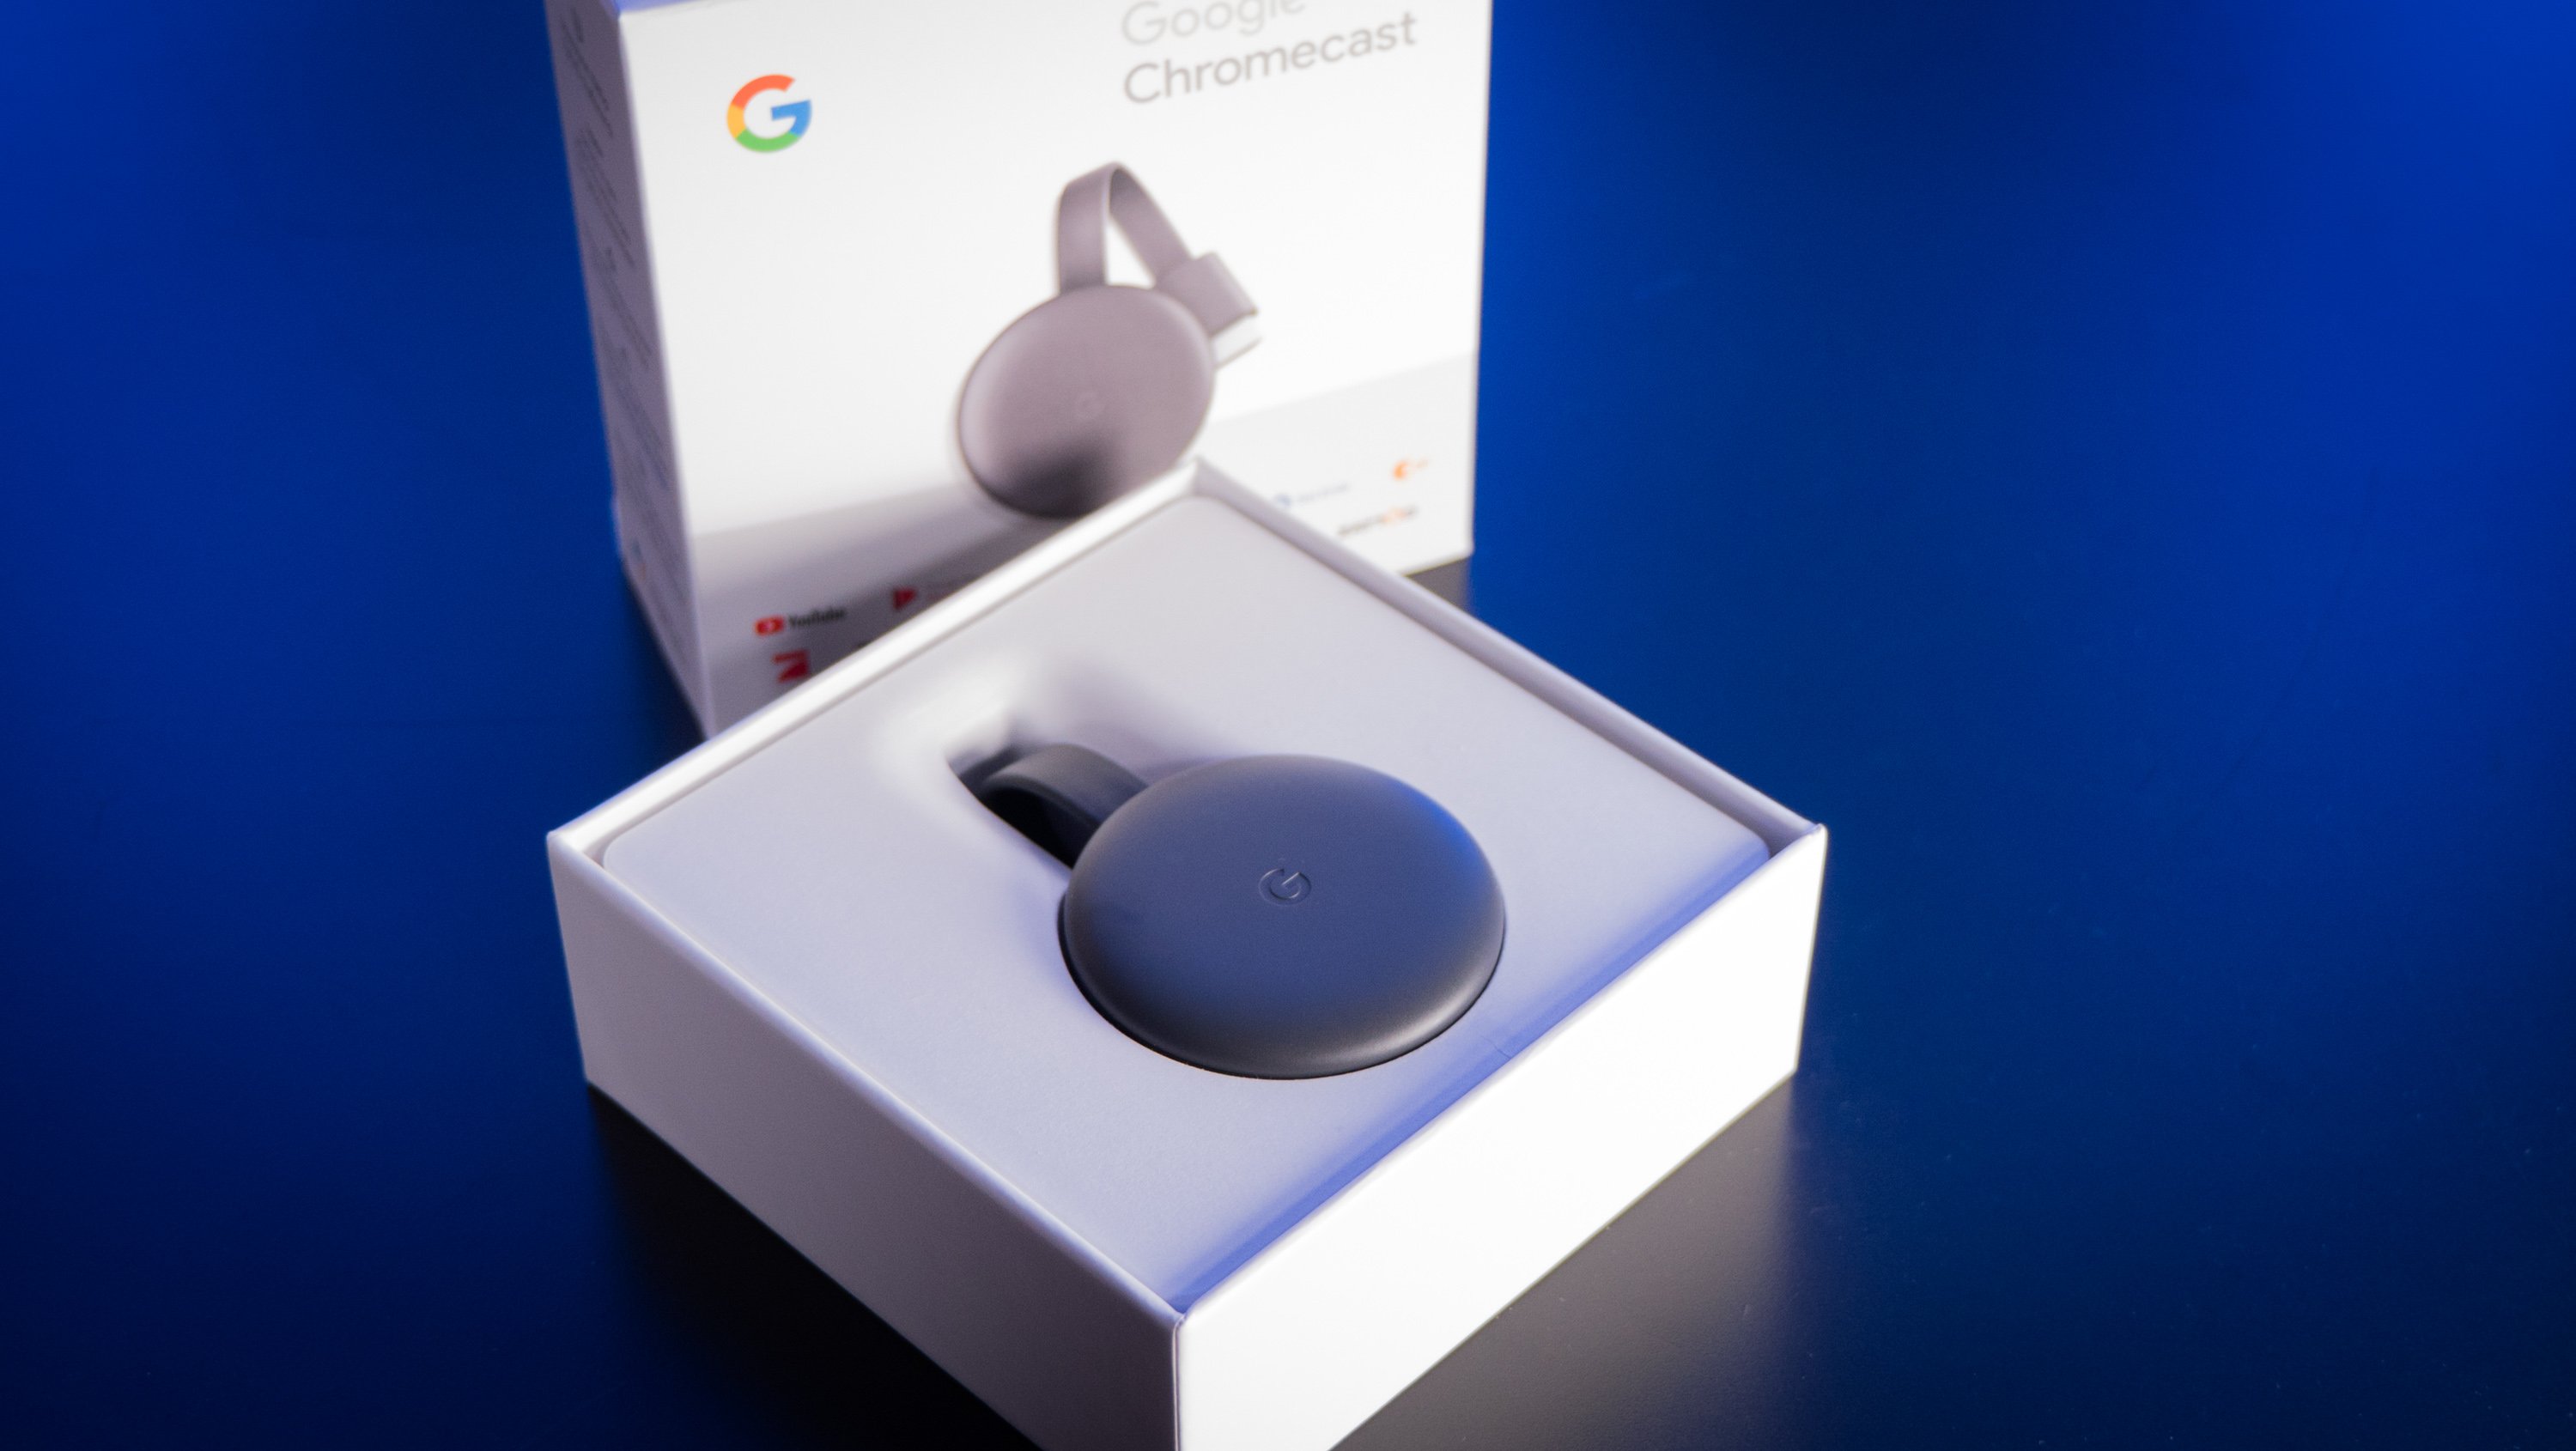 Reception uudgrundelig sagging Google Chromecast einrichten & installieren – so geht's